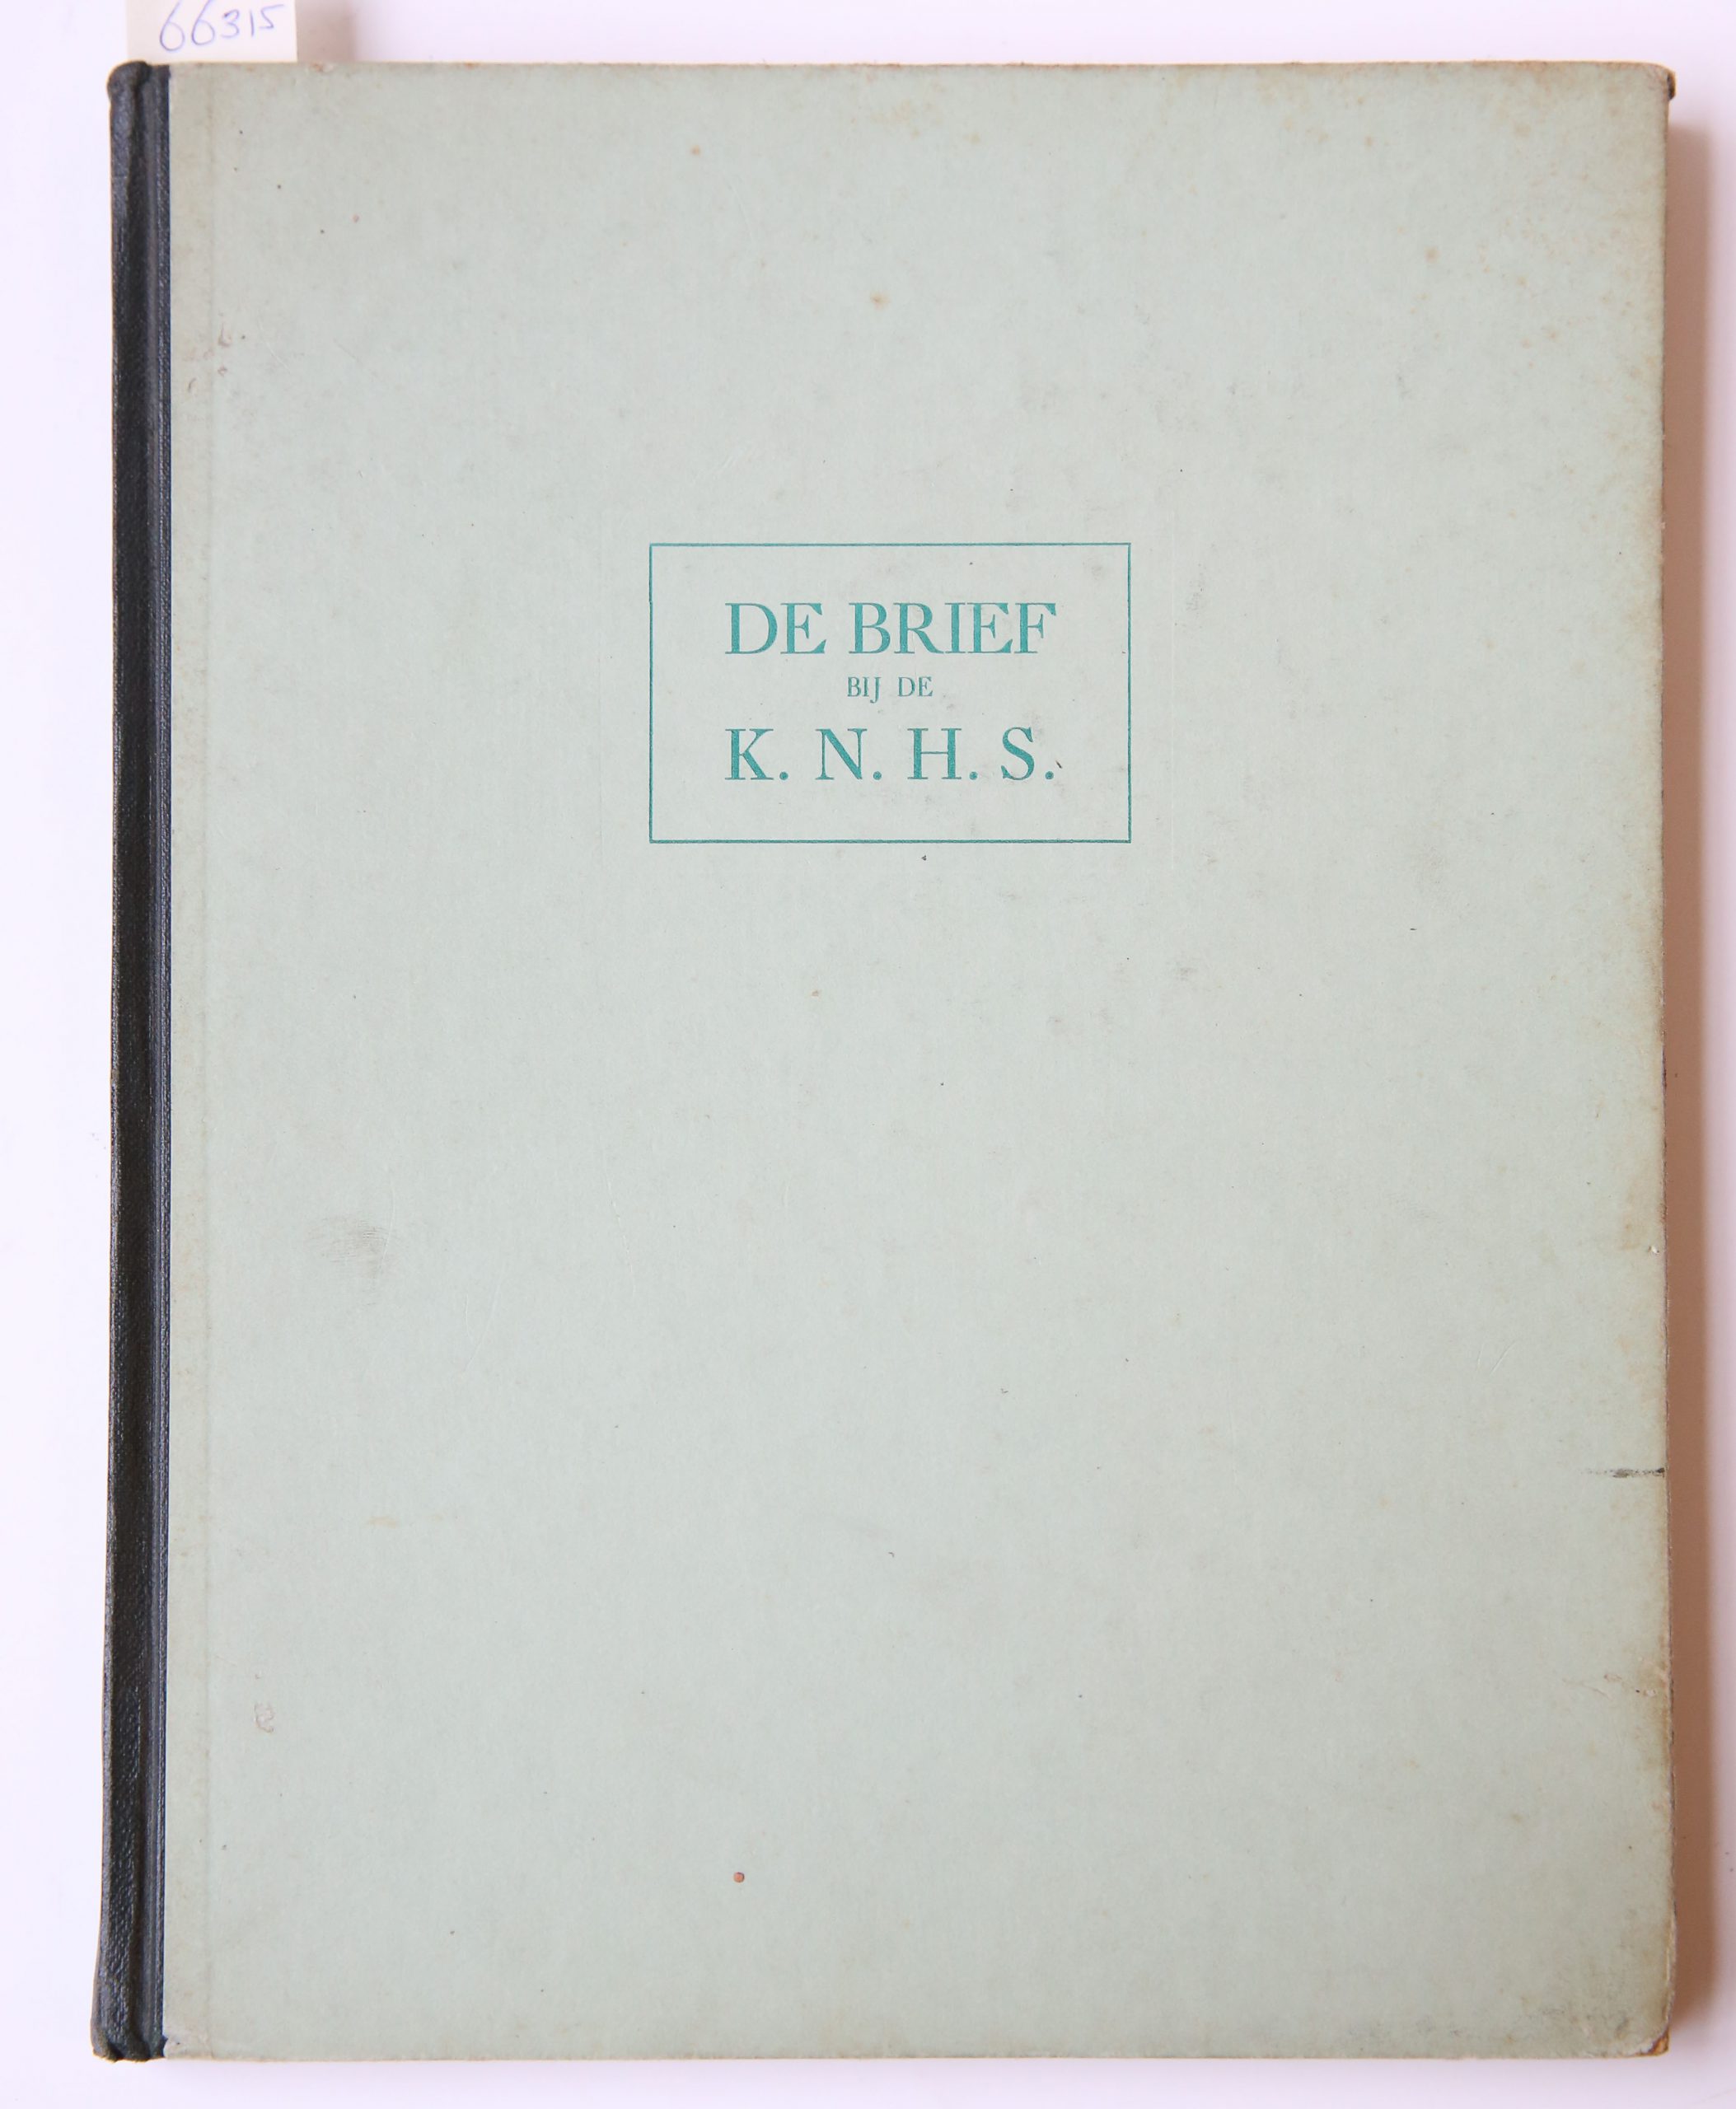 [YMUIDEN, HOOGOVENS, SMEENK] - De brief bij de K.N.H.S. gedrukt boek aangeboden aan mejuffrouw H.B.P.J. Smeenk bij haar vertrek op 30-9-1941 door directie en personeel van de Kon. Ned. Hoogovens en Staalfabrieken te Ymuiden. Gedrukt in 7 exemplaren. (Dit is nr. 4.) Gebonden.